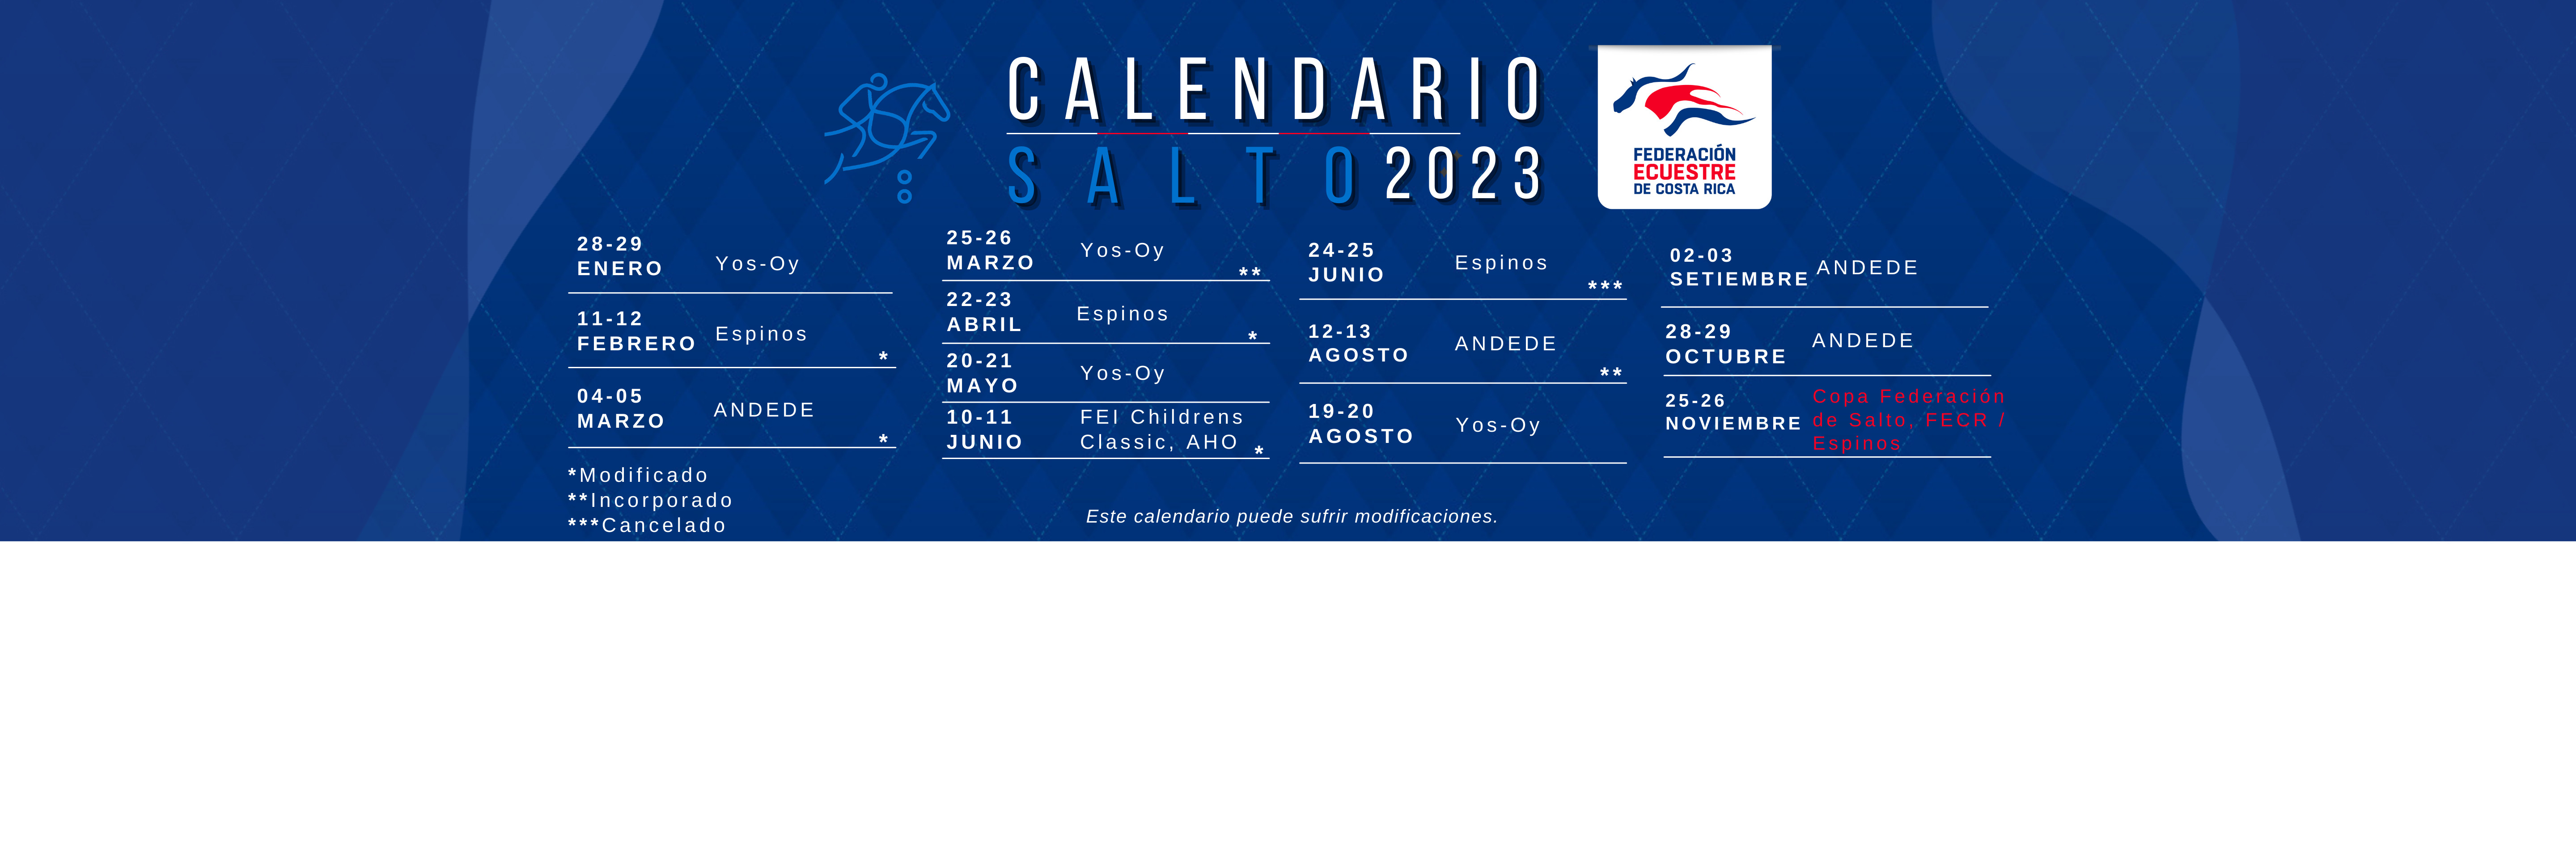 Calendario Salto 2023